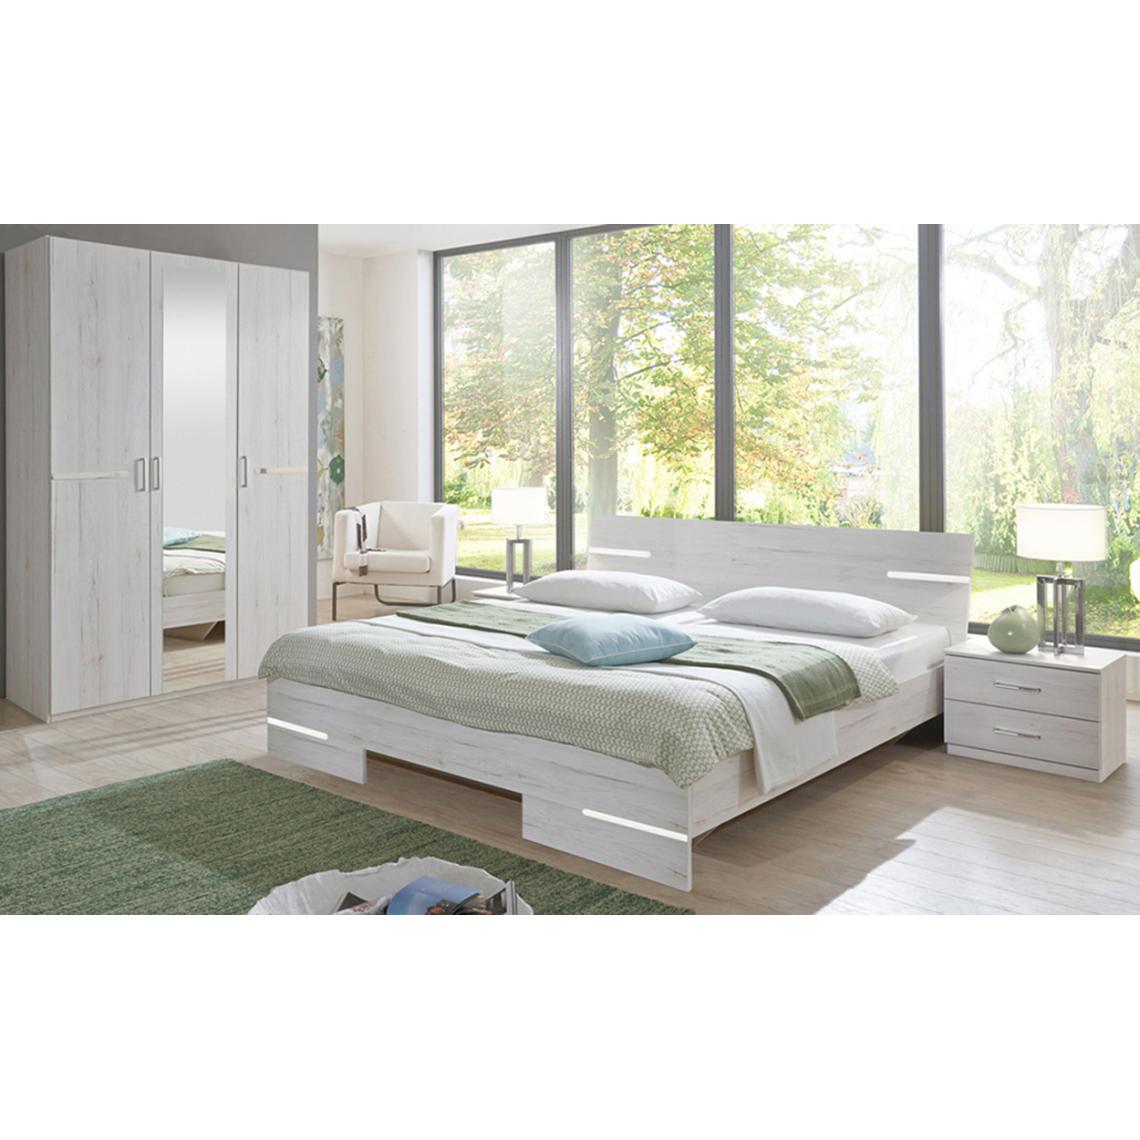 Pegane - Chambre à coucher complète adulte (lit 140x190 cm + 2 chevets + armoire) coloris imitation chêne blanc/chrome brillant - Chambre complète